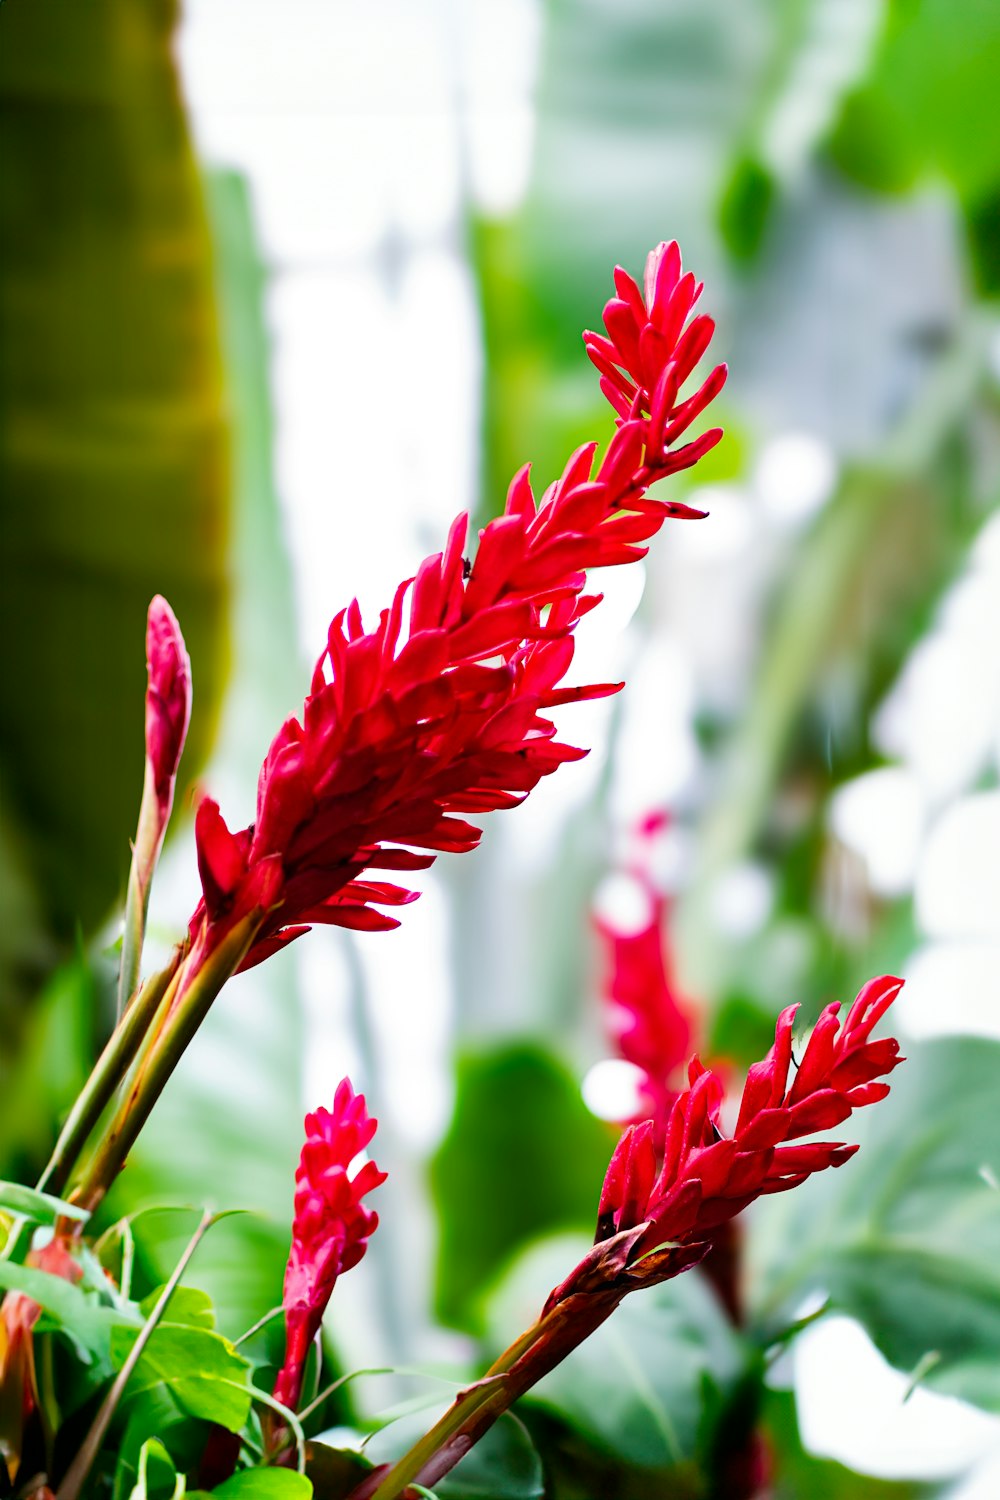 Nahaufnahme einer roten Blume auf einer Pflanze